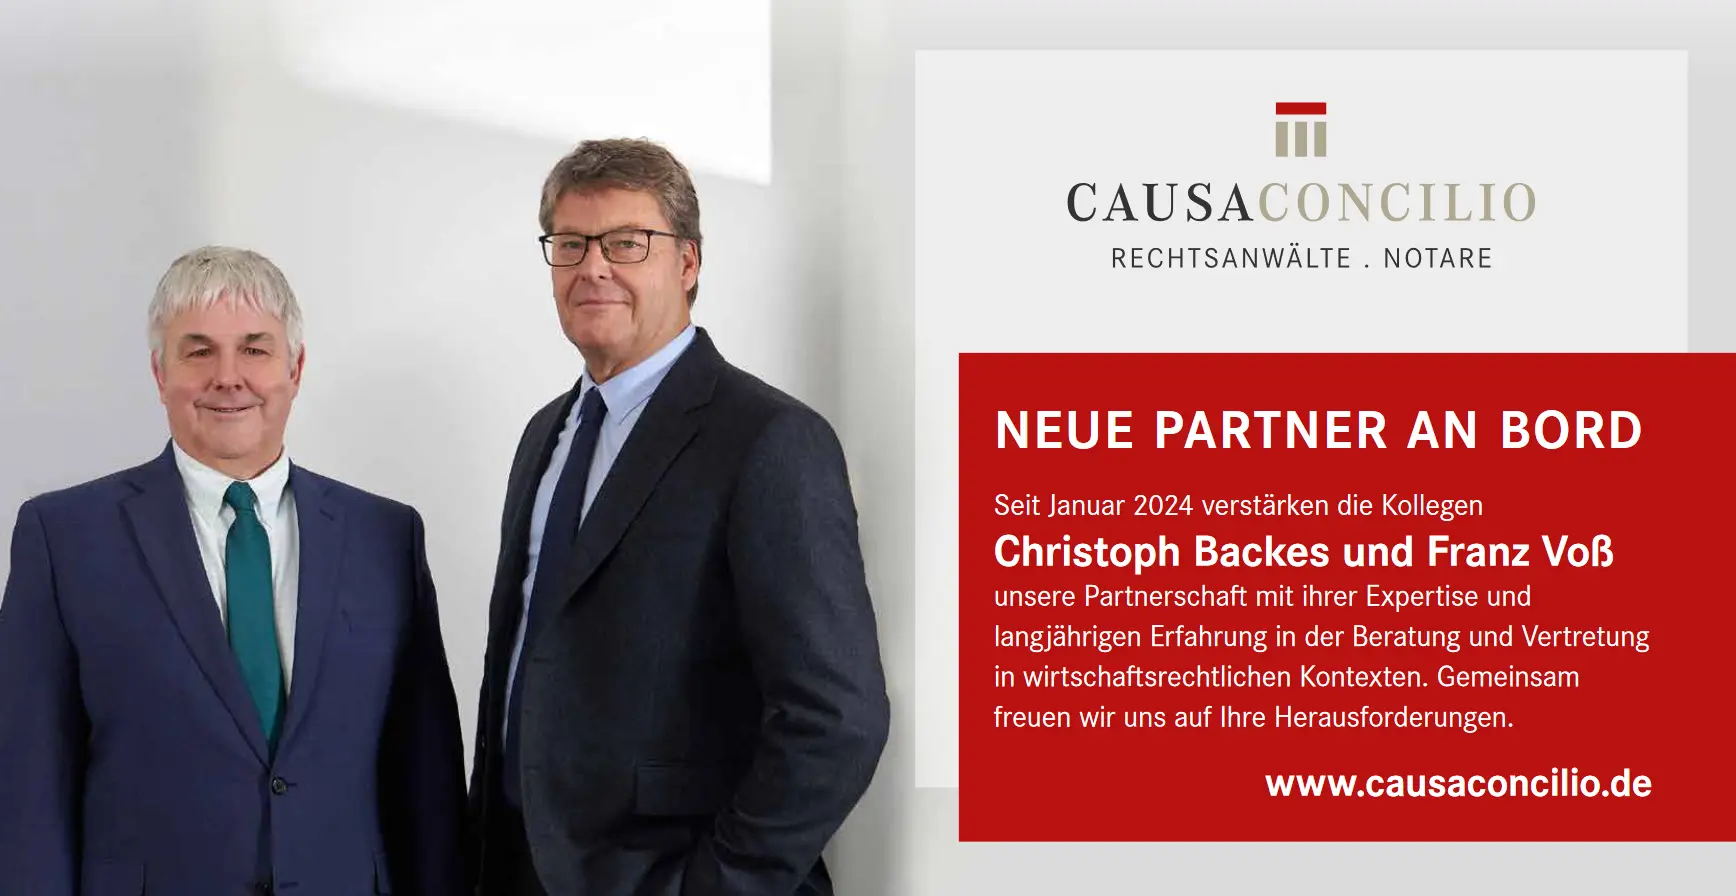 Seit Januar 2024 verstärken die Kollegen Christoph Backes und Franz Voß unsere Partnerschaft mit ihrer Expertise